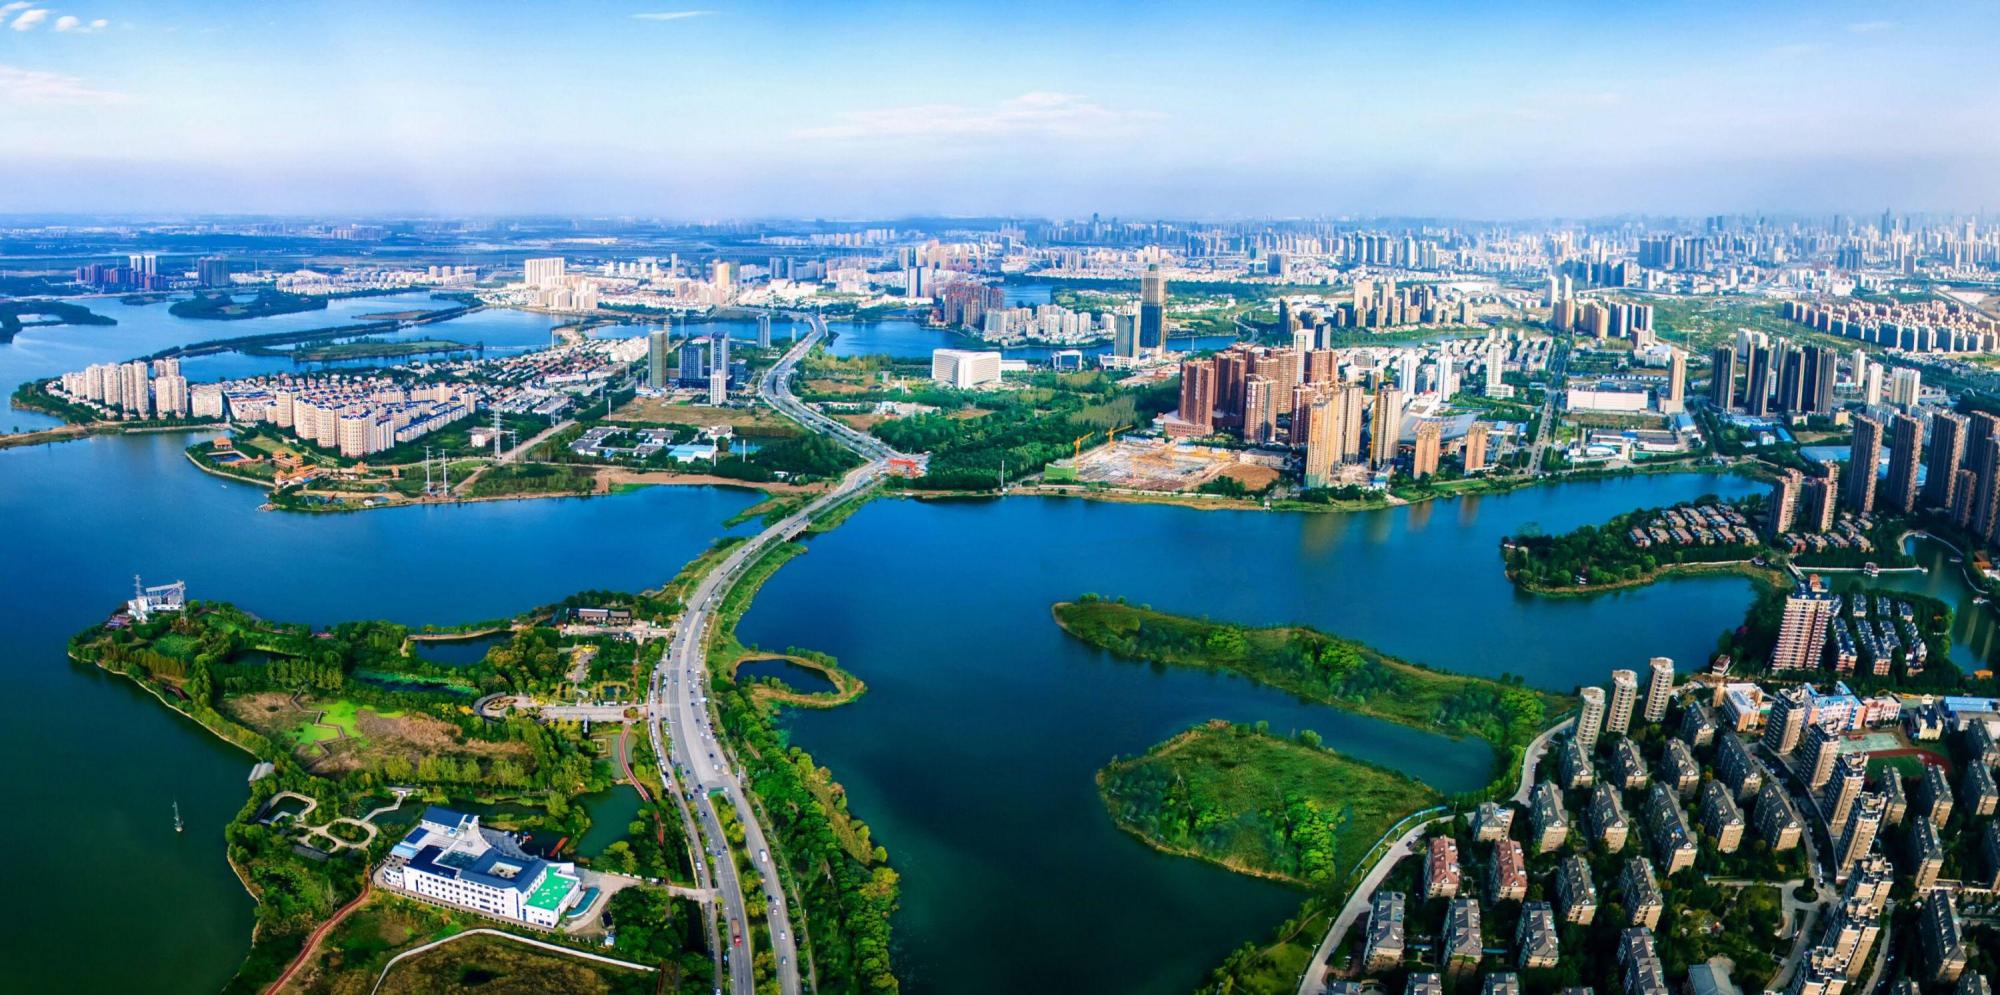 公司介绍武汉博安建设工程有限公司是20020823在湖北省武汉市东西湖区